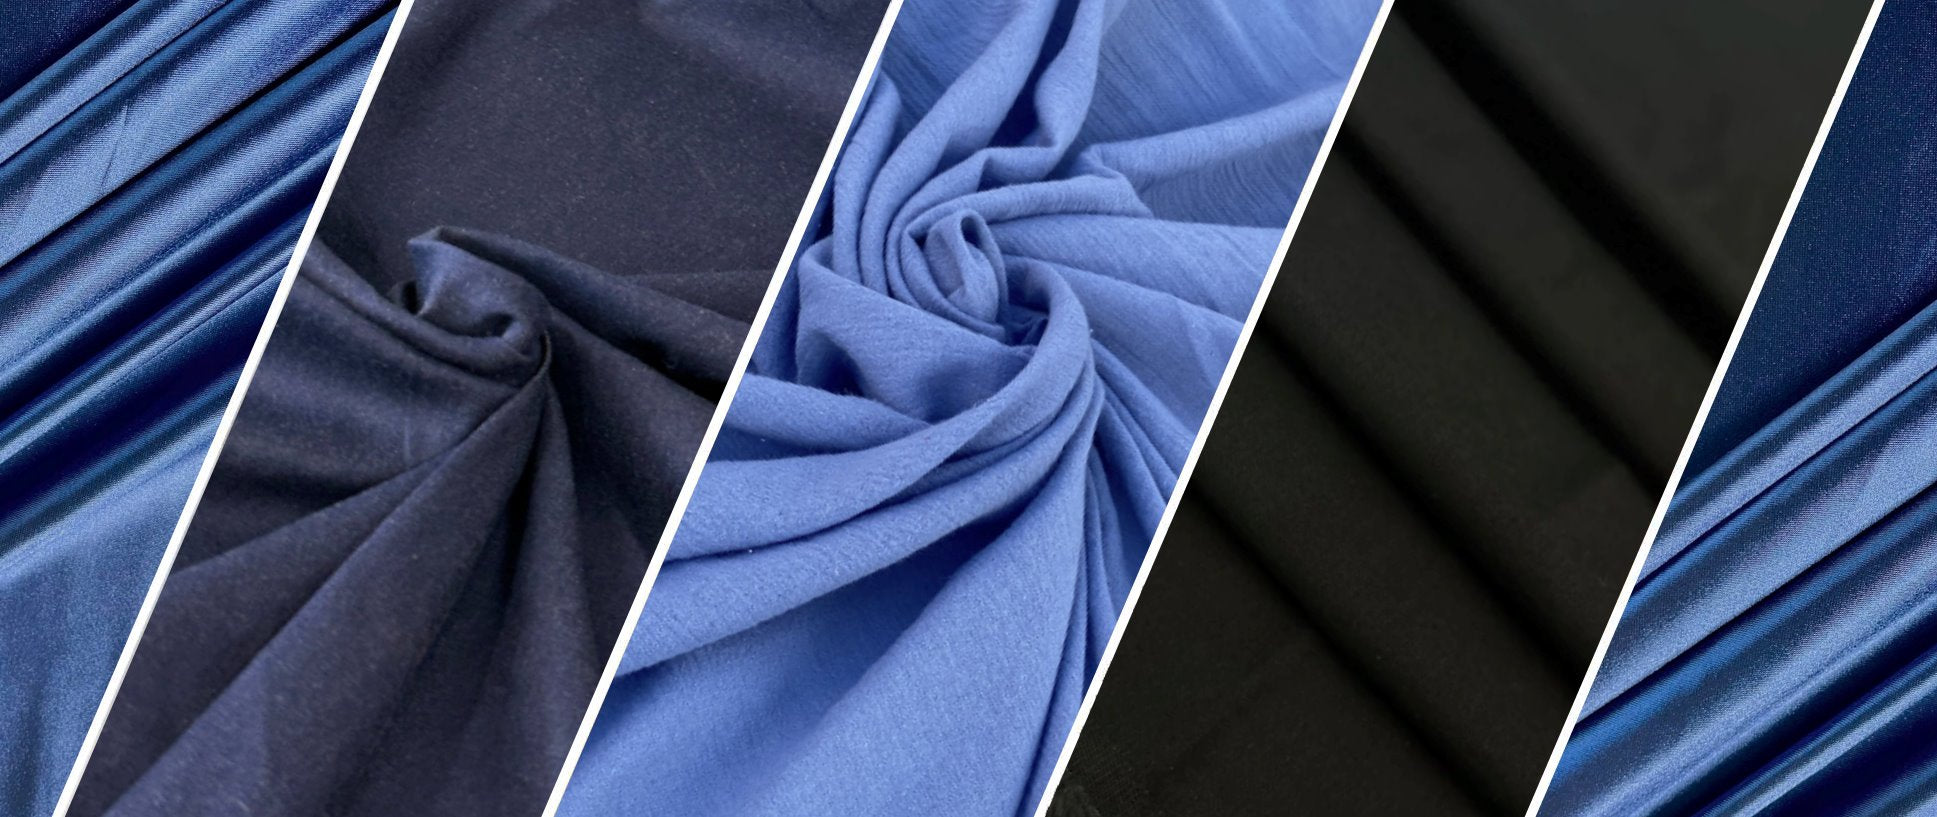 Shop now Royal Blue Satin by Yard- Kiki Textiles – KikiTextiles